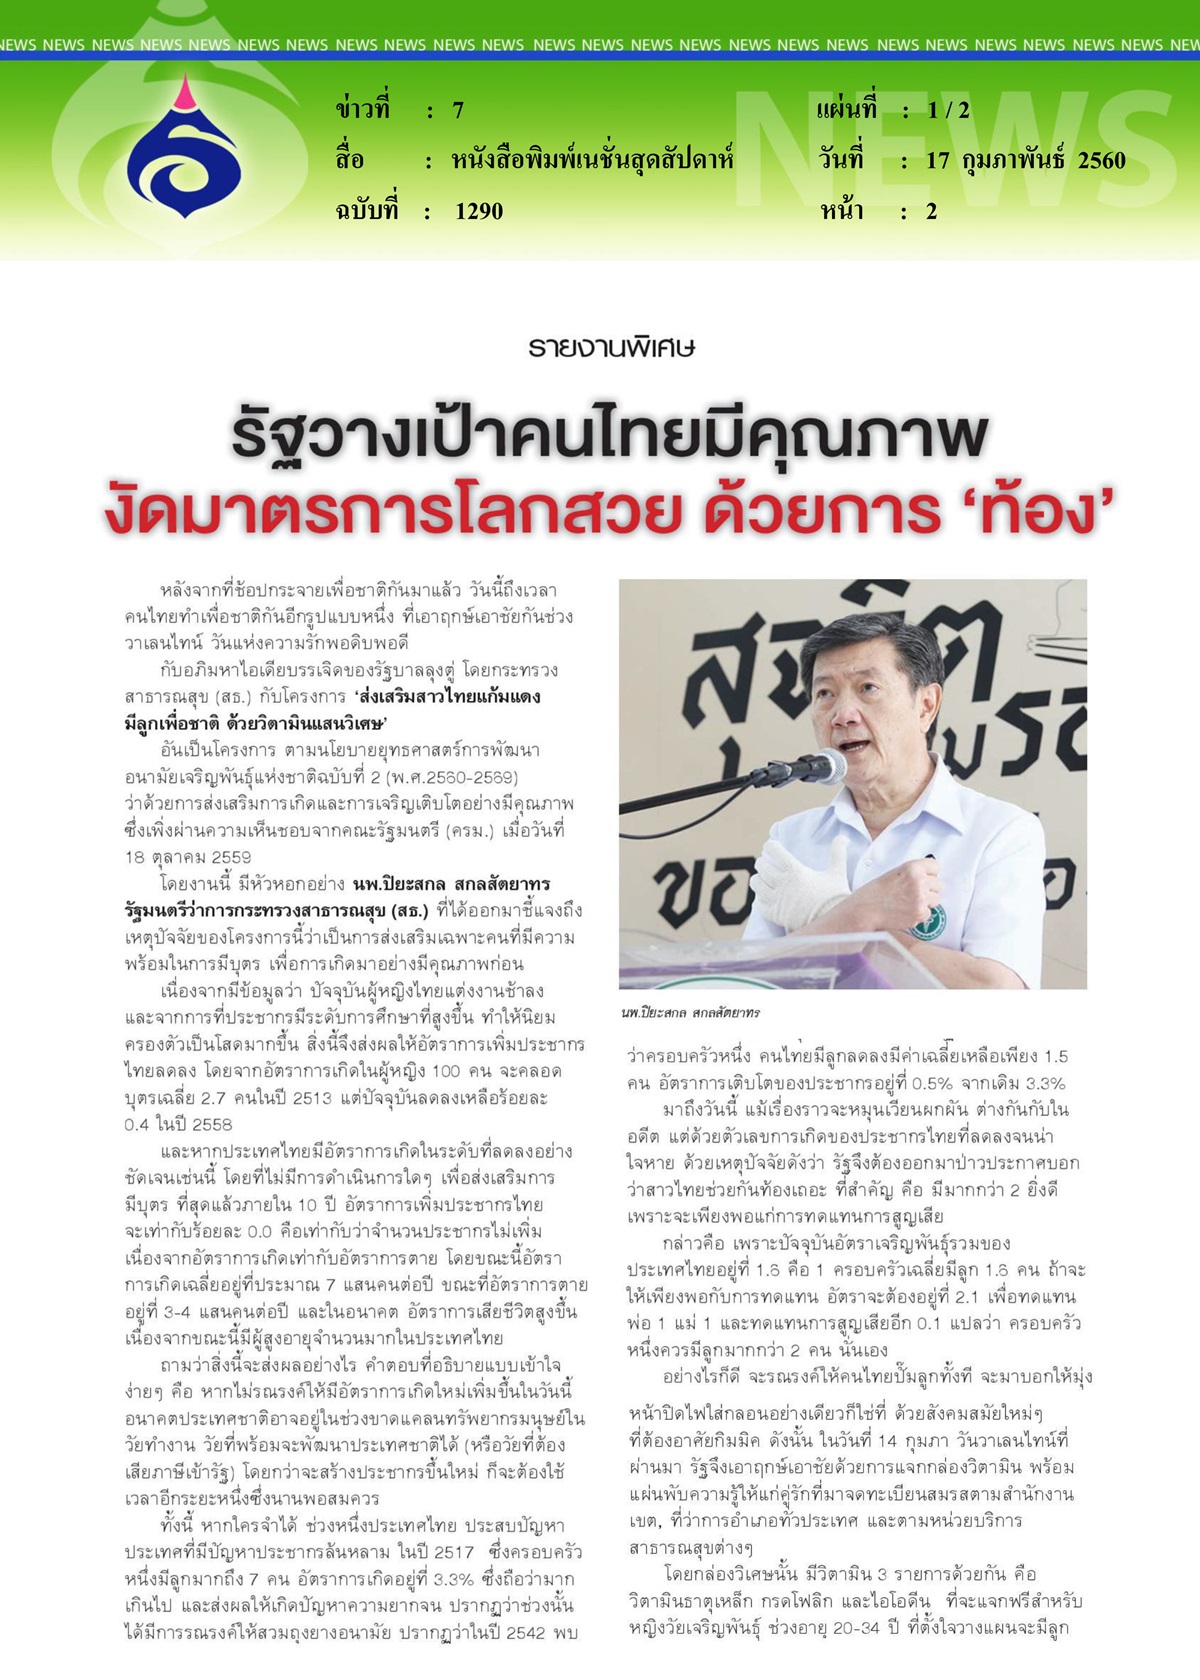 หนังสือพิมพ์เนชั่นสุดสัปดาห์, รัฐวางเป้าคนไทยมีคุณภาพงัดมาตรการโลกสวย ด้วยการ 'ท้อง'